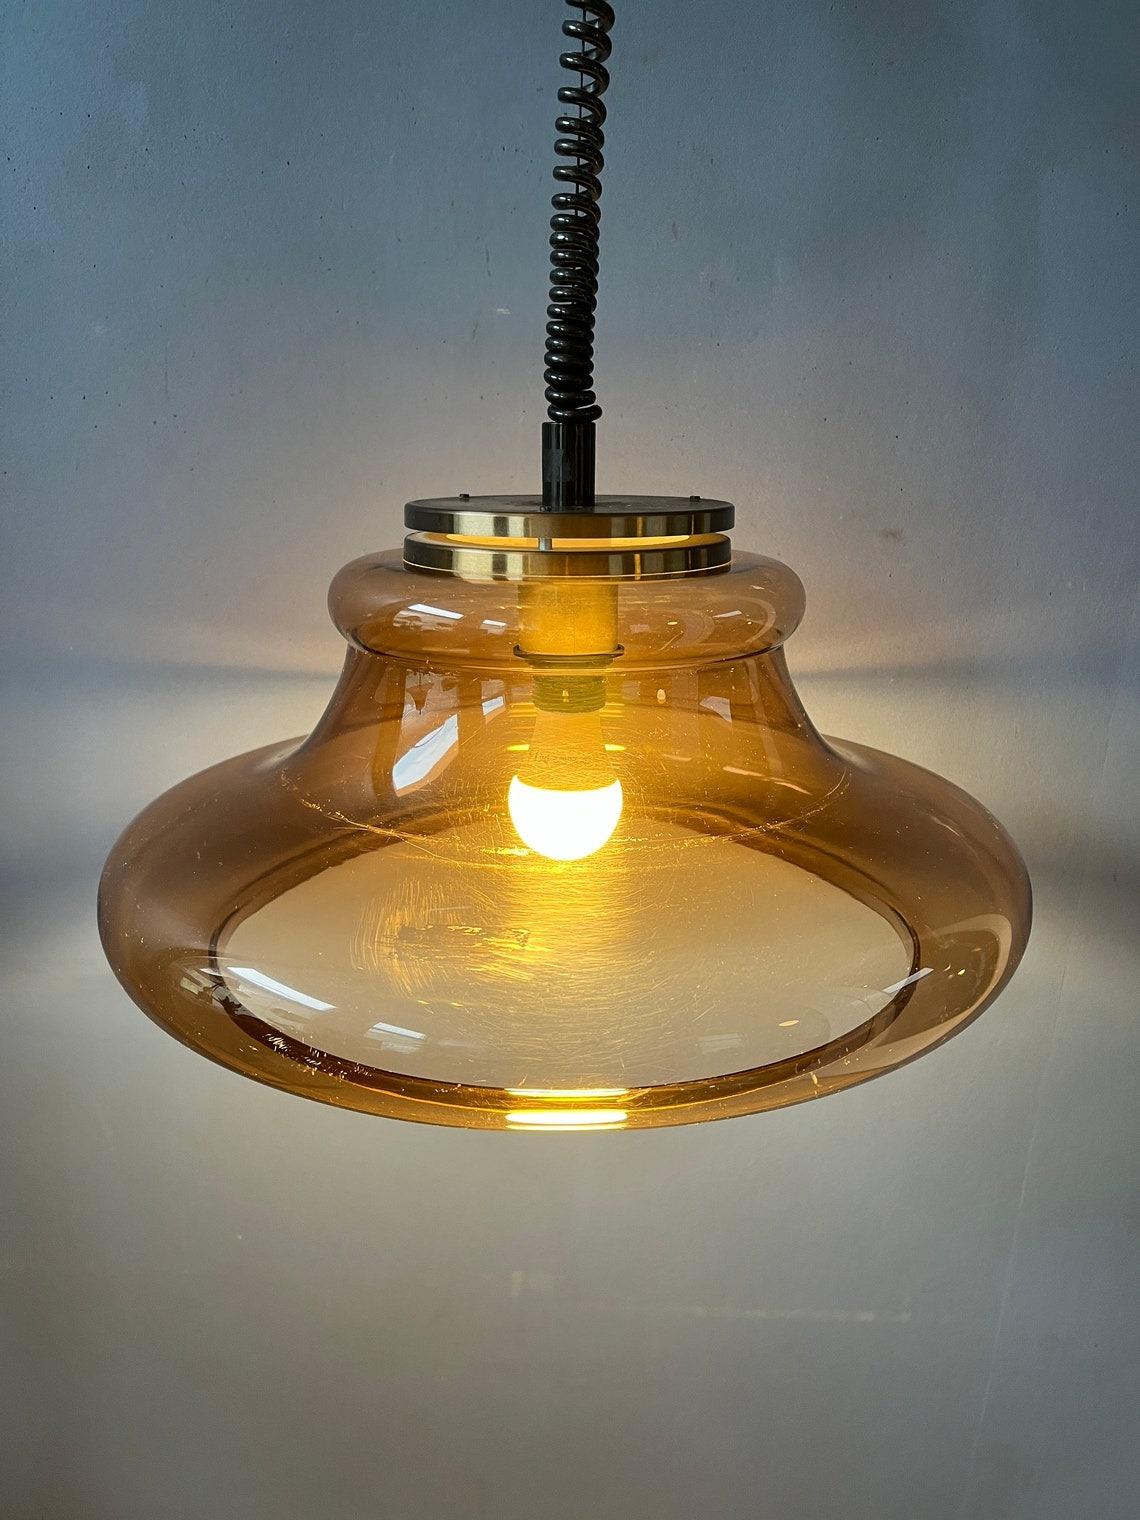 Lampe suspendue de l'ère spatiale par Herda avec abat-jour transparent. L'abat-jour est en verre acrylique de couleur cuivrée. La hauteur de la lampe peut être réglée grâce au système de montée et de descente.

Informations complémentaires